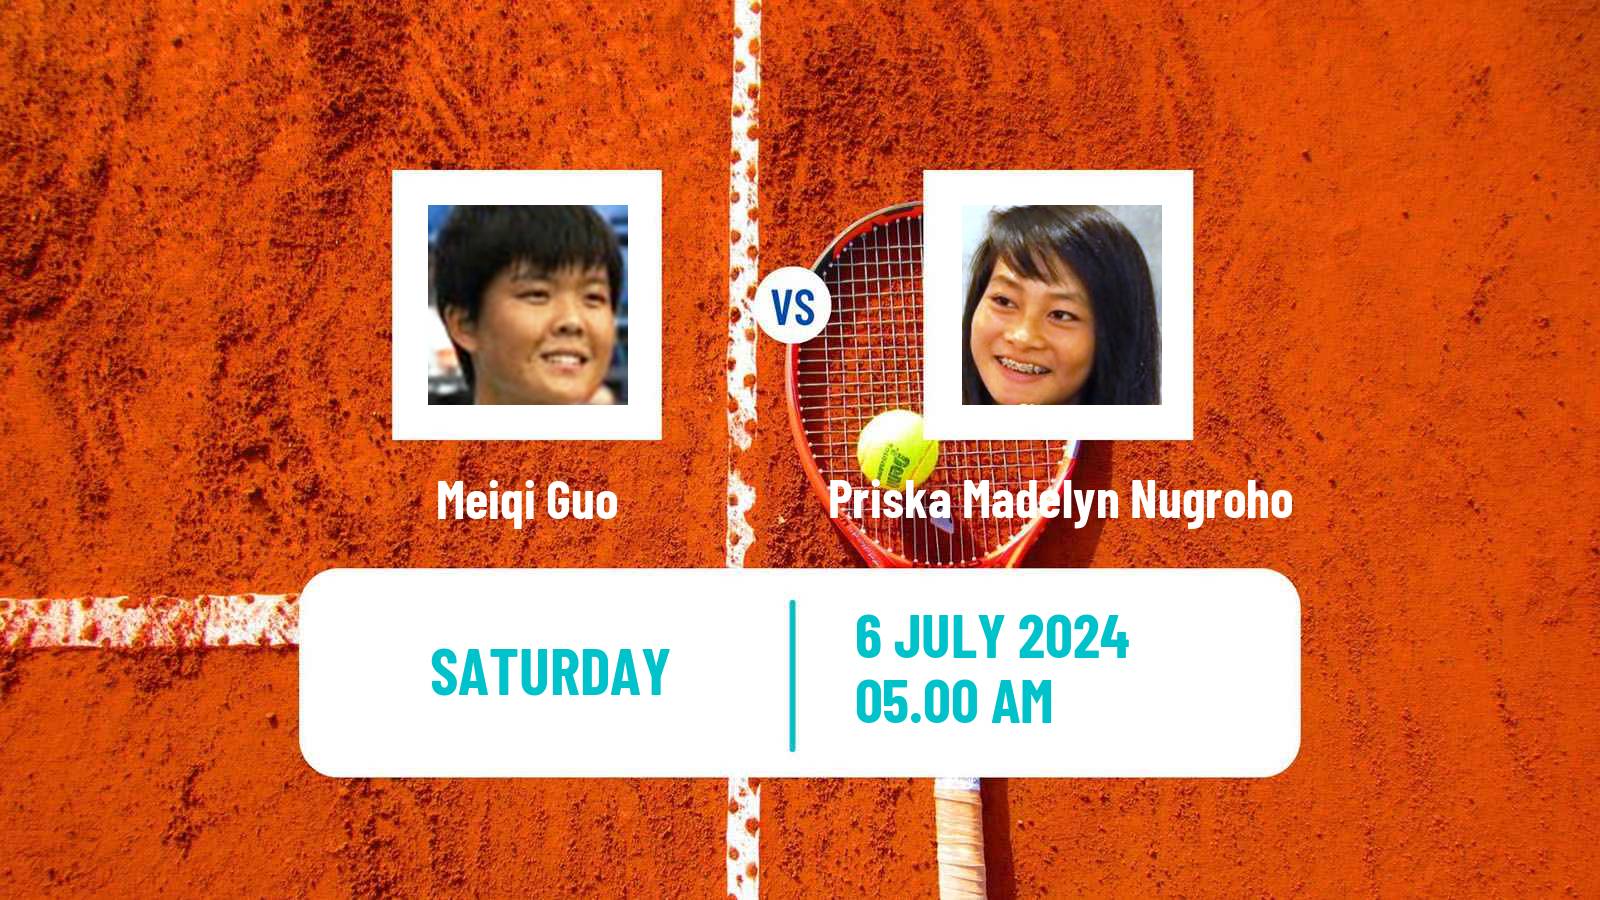 Tennis ITF W15 Tianjin 2 Women Meiqi Guo - Priska Madelyn Nugroho